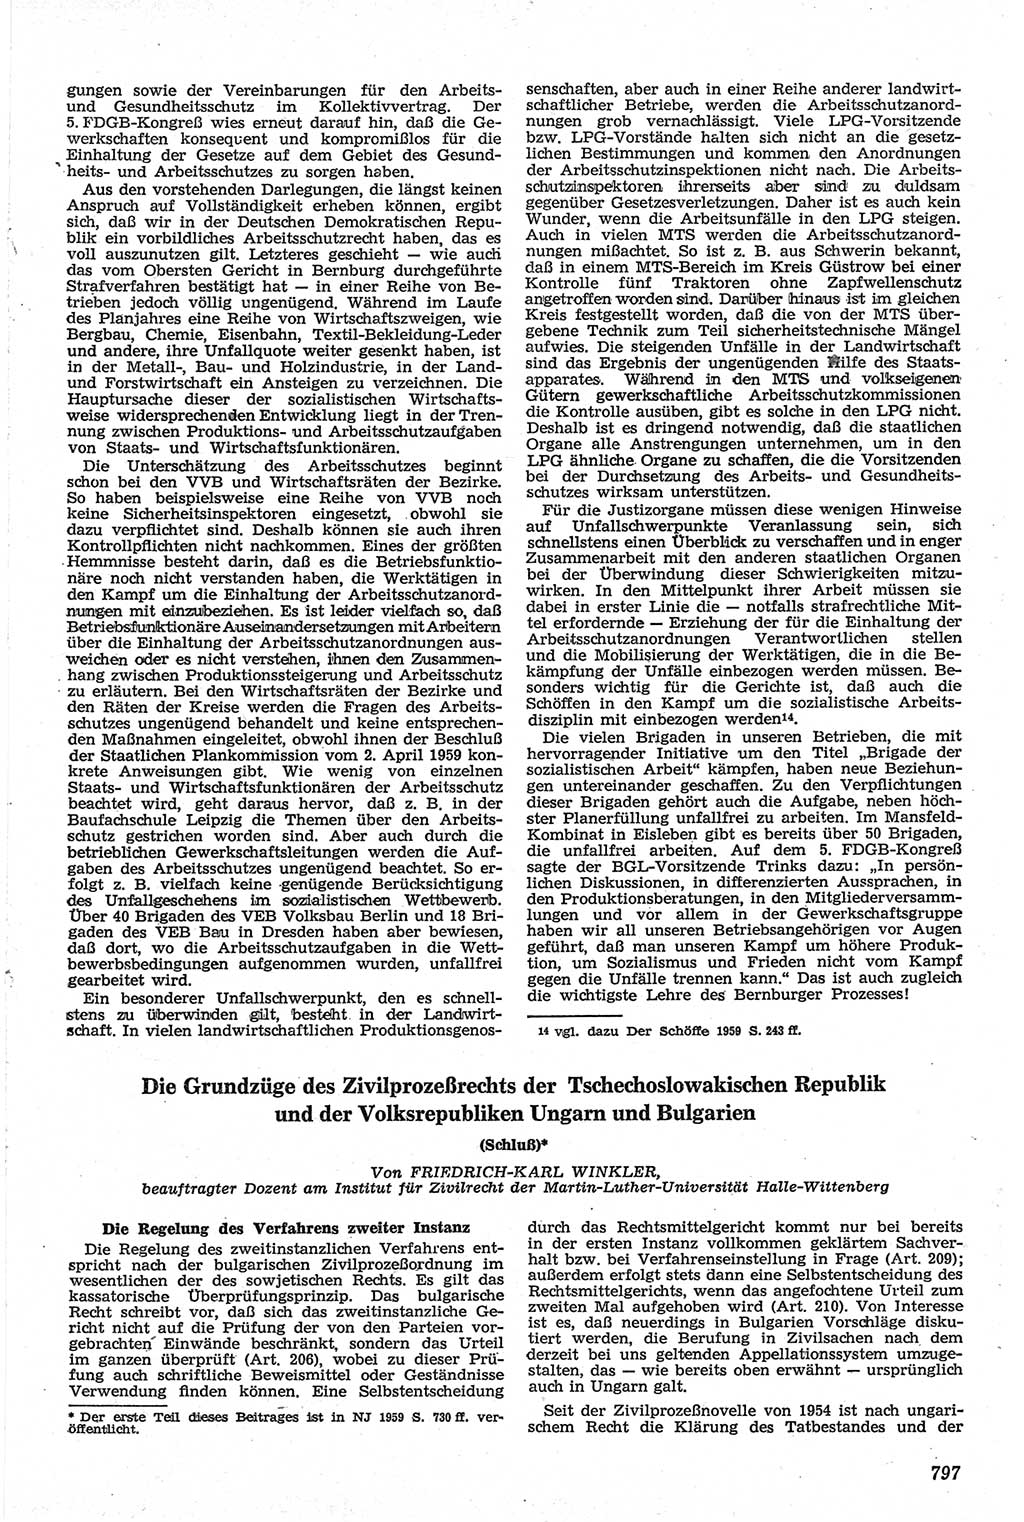 Neue Justiz (NJ), Zeitschrift für Recht und Rechtswissenschaft [Deutsche Demokratische Republik (DDR)], 13. Jahrgang 1959, Seite 797 (NJ DDR 1959, S. 797)